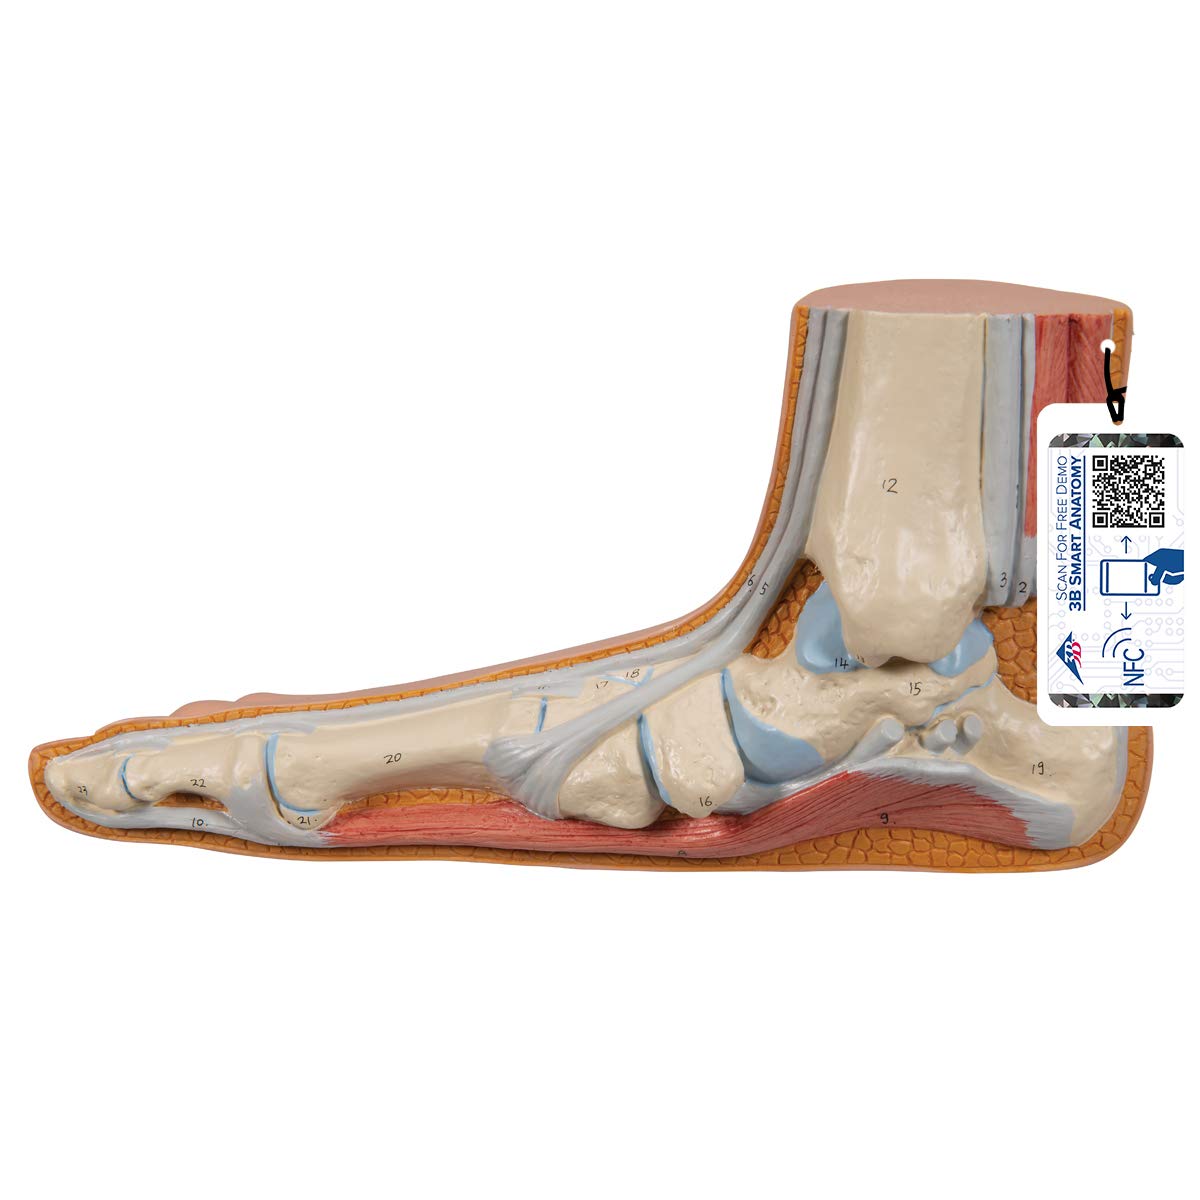 3B Scientific Menschliche Anatomie - Modell - Plattfuß (Pes planus) + kostenlose Anatomie App - 3B Smart Anatomy